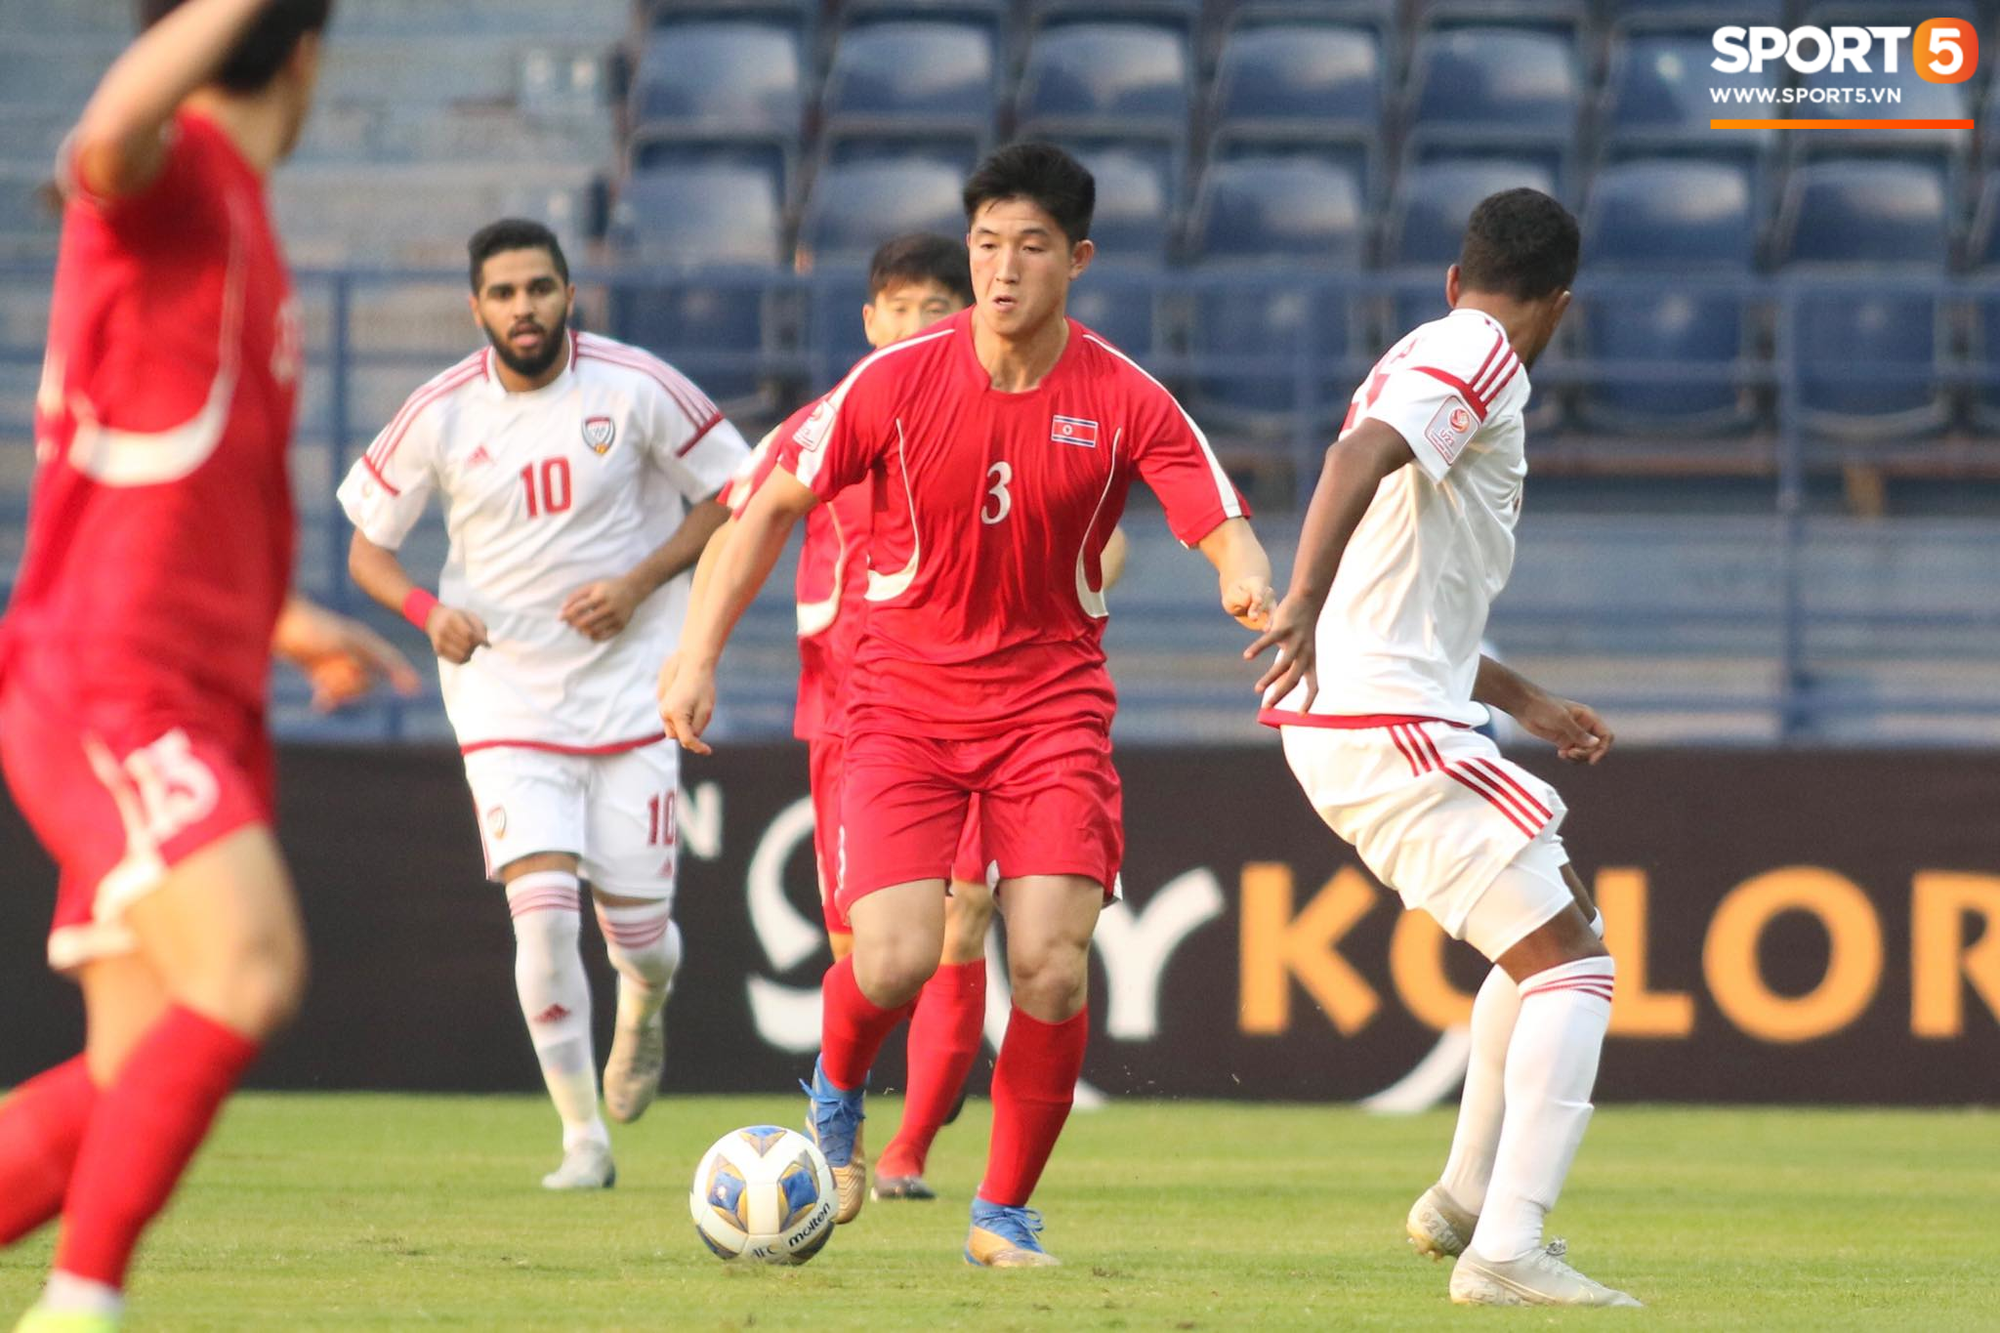 [Bảng D - VCK U23 châu Á] U23 UAE 2-0 U23 Triều Tiên: Thắng dễ Triều Tiên, UAE đẩy Việt Nam vào cửa tử - Ảnh 11.